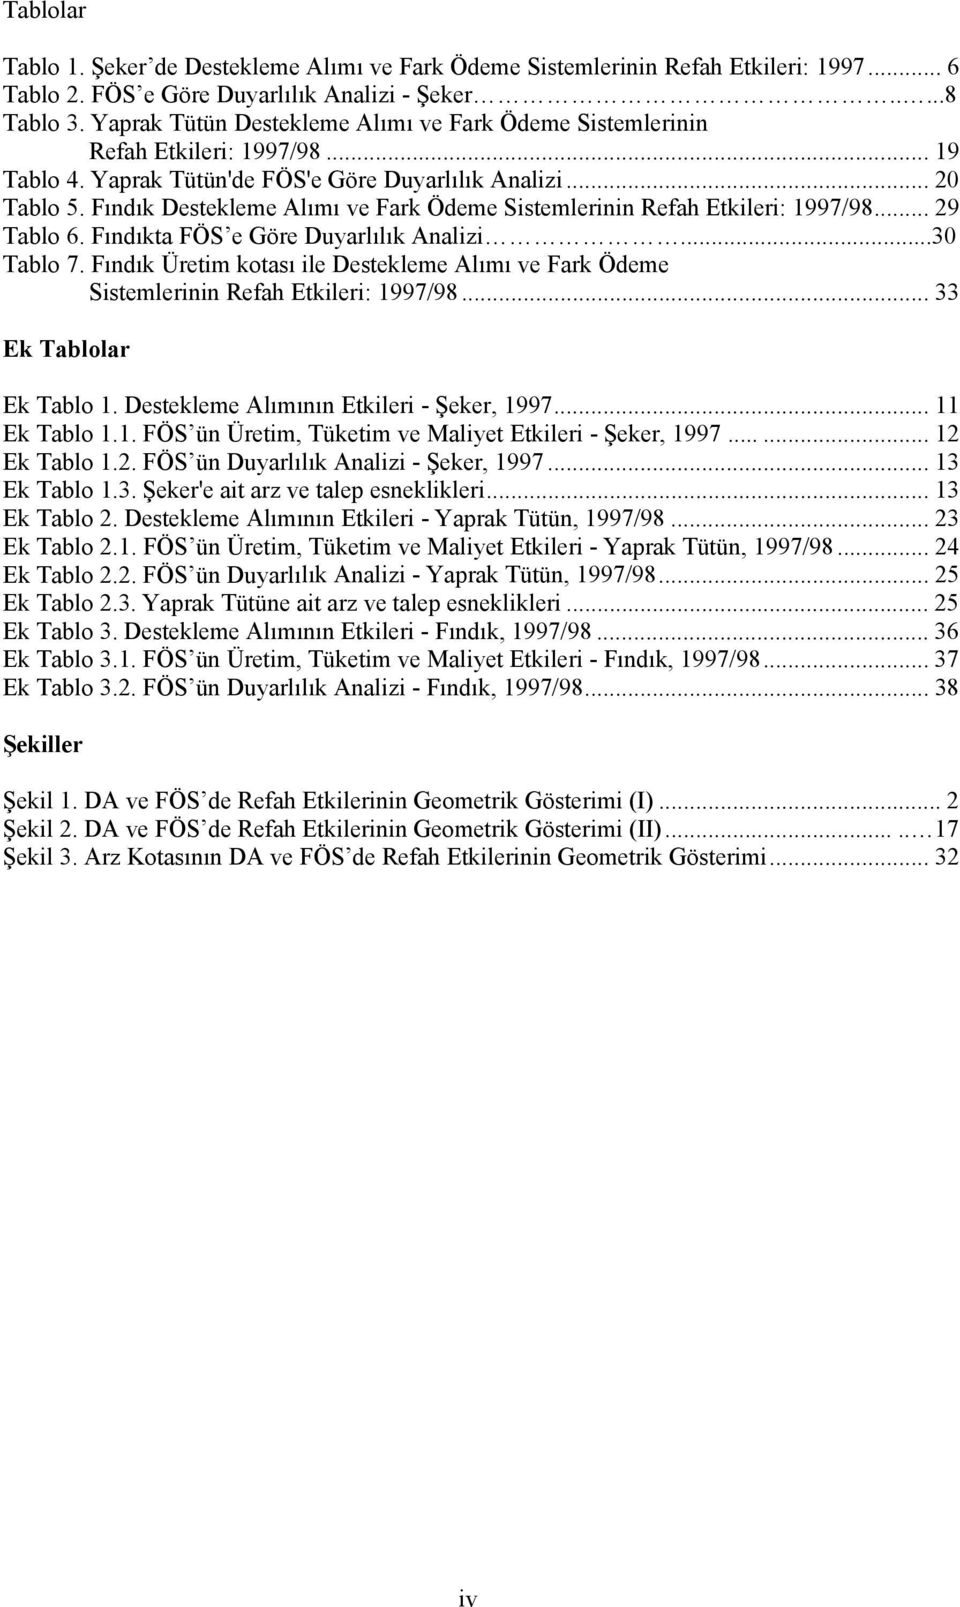 Fındık Destekleme Alımı ve Fark Ödeme Sistemlerinin Refah Etkileri: 1997/98... 29 Tablo 6. Fındıkta FÖS e Göre Duyarlılık Analizi...30 Tablo 7.